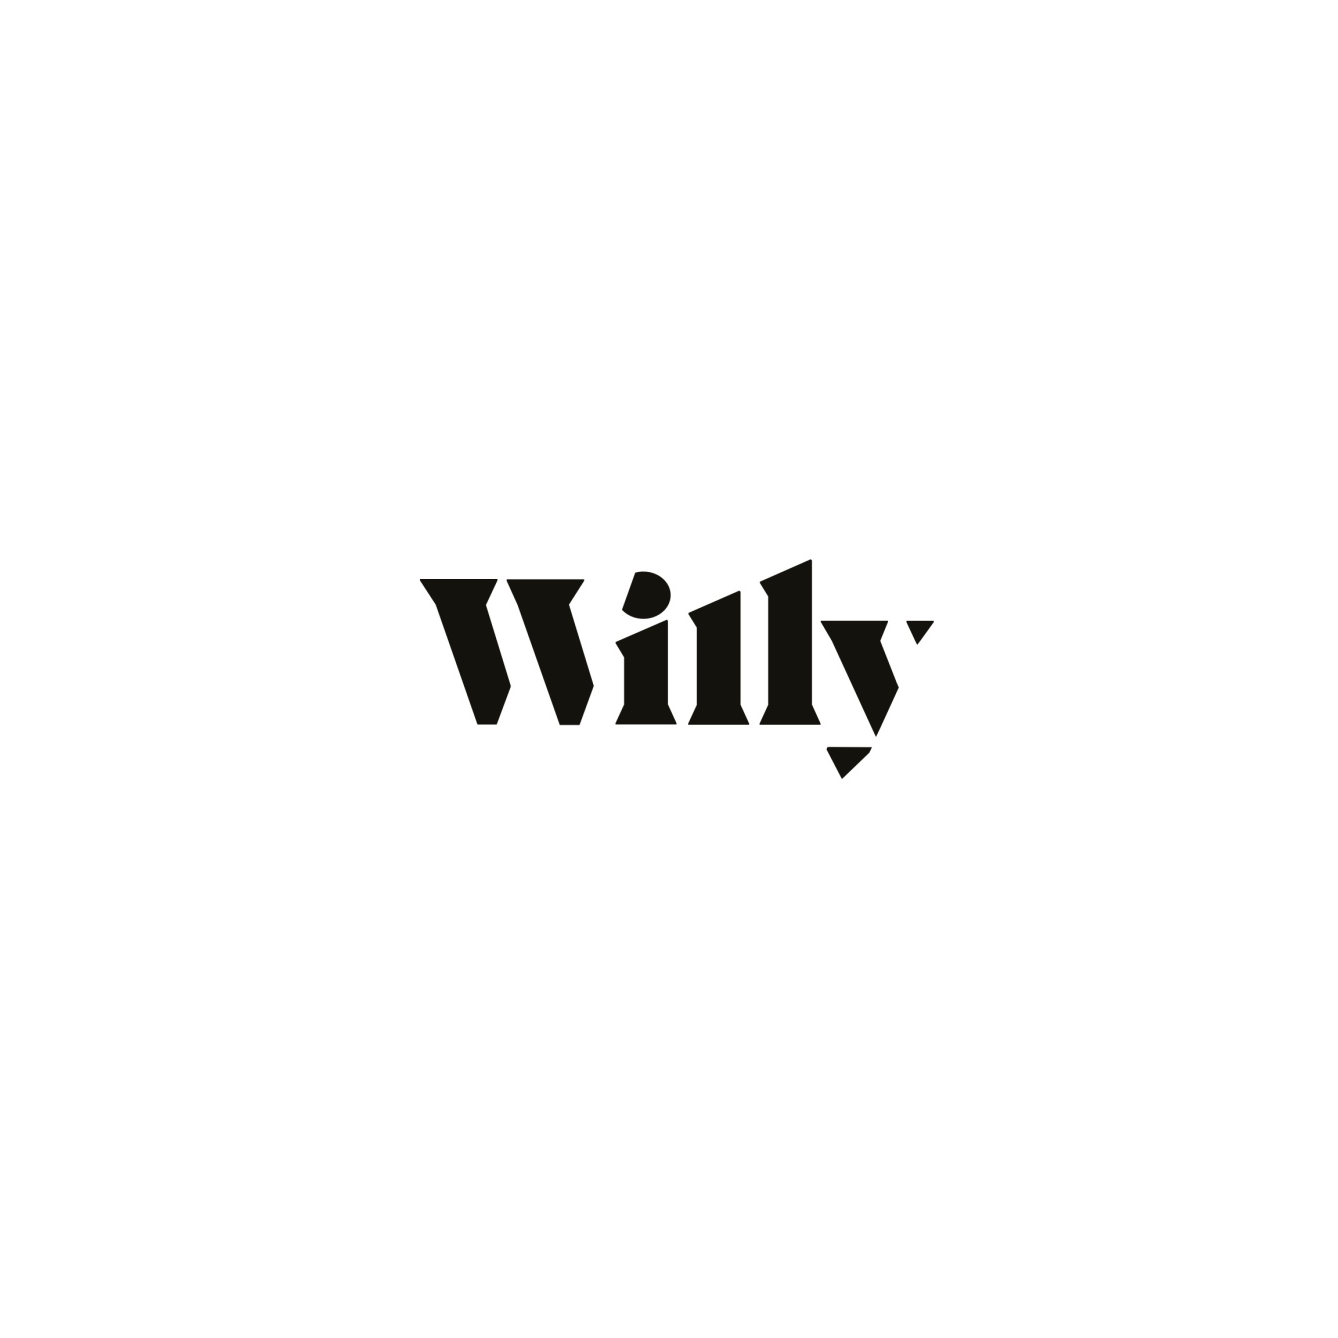 Willy logo blokje